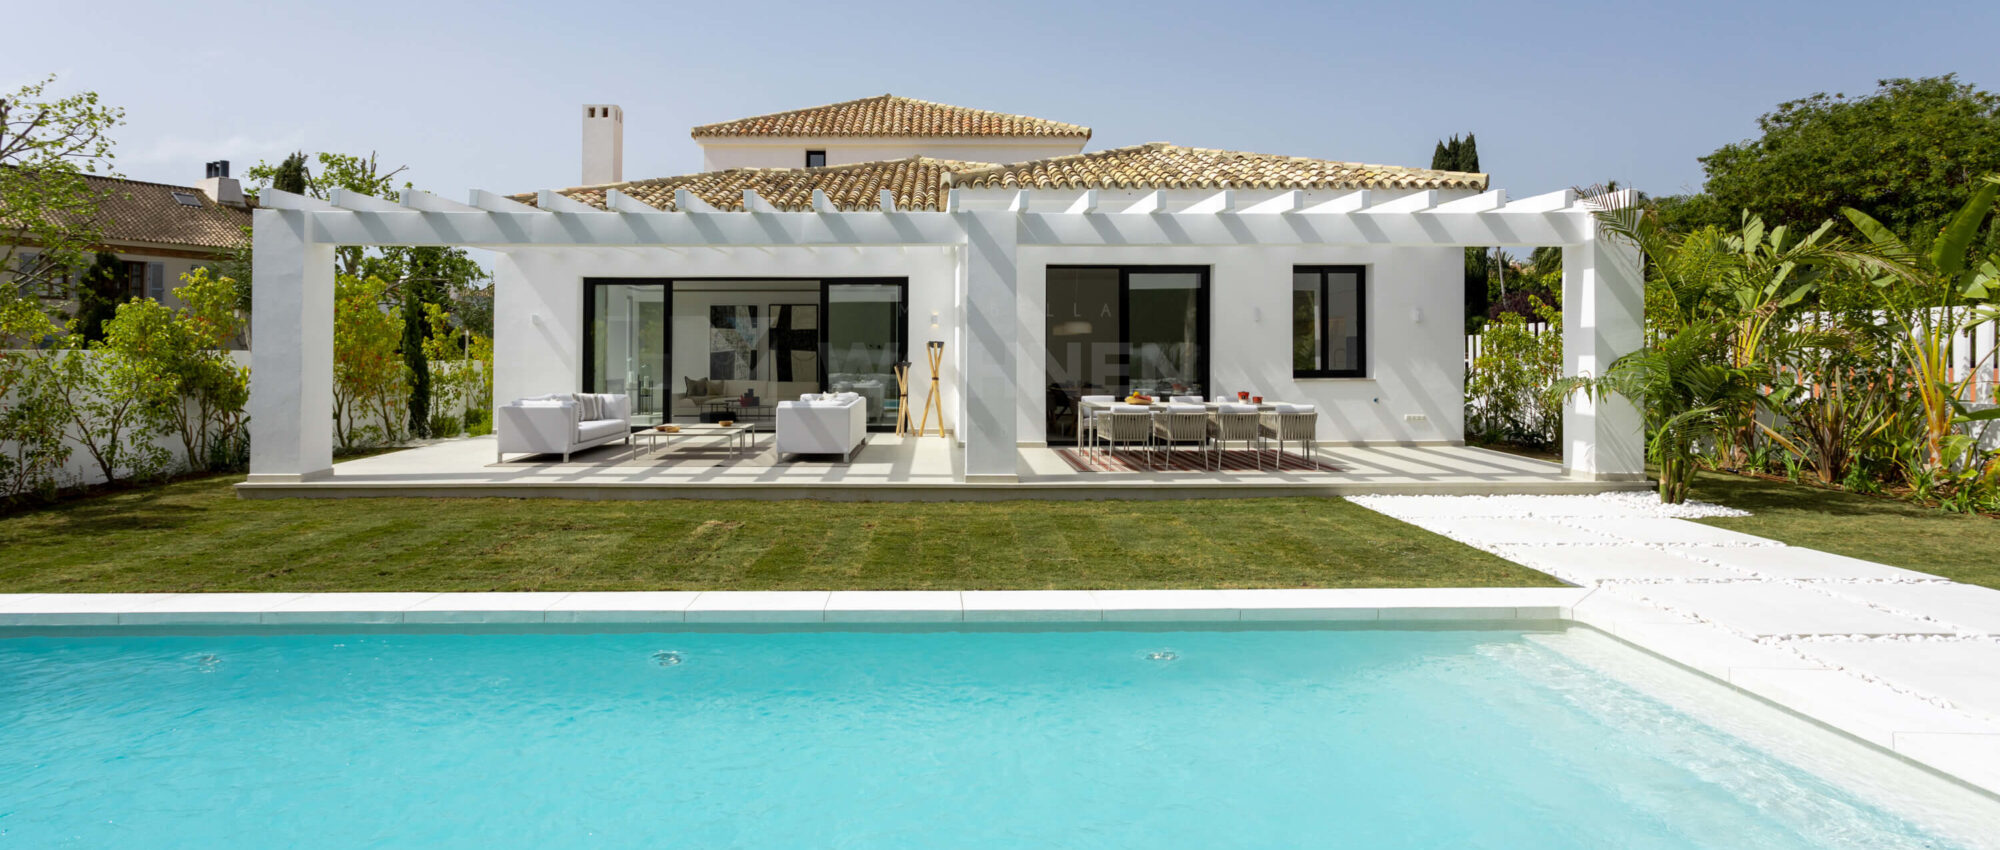 Nueva villa de estilo mediterráneo cerca de la playa en Guadalmina Baja